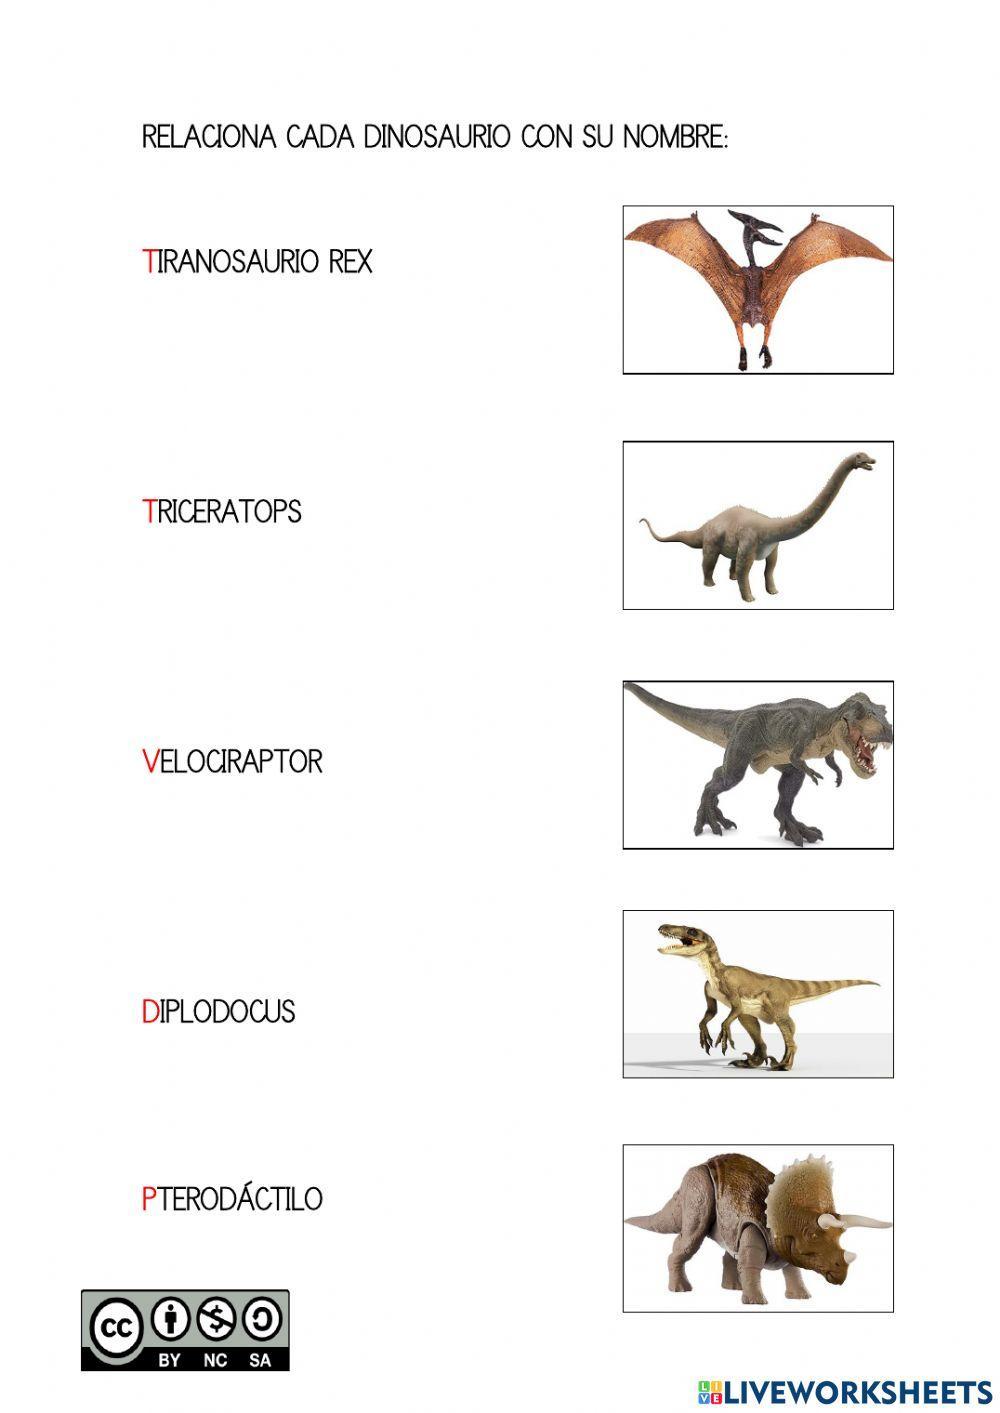 Relaciona los dinosaurios con su nombre